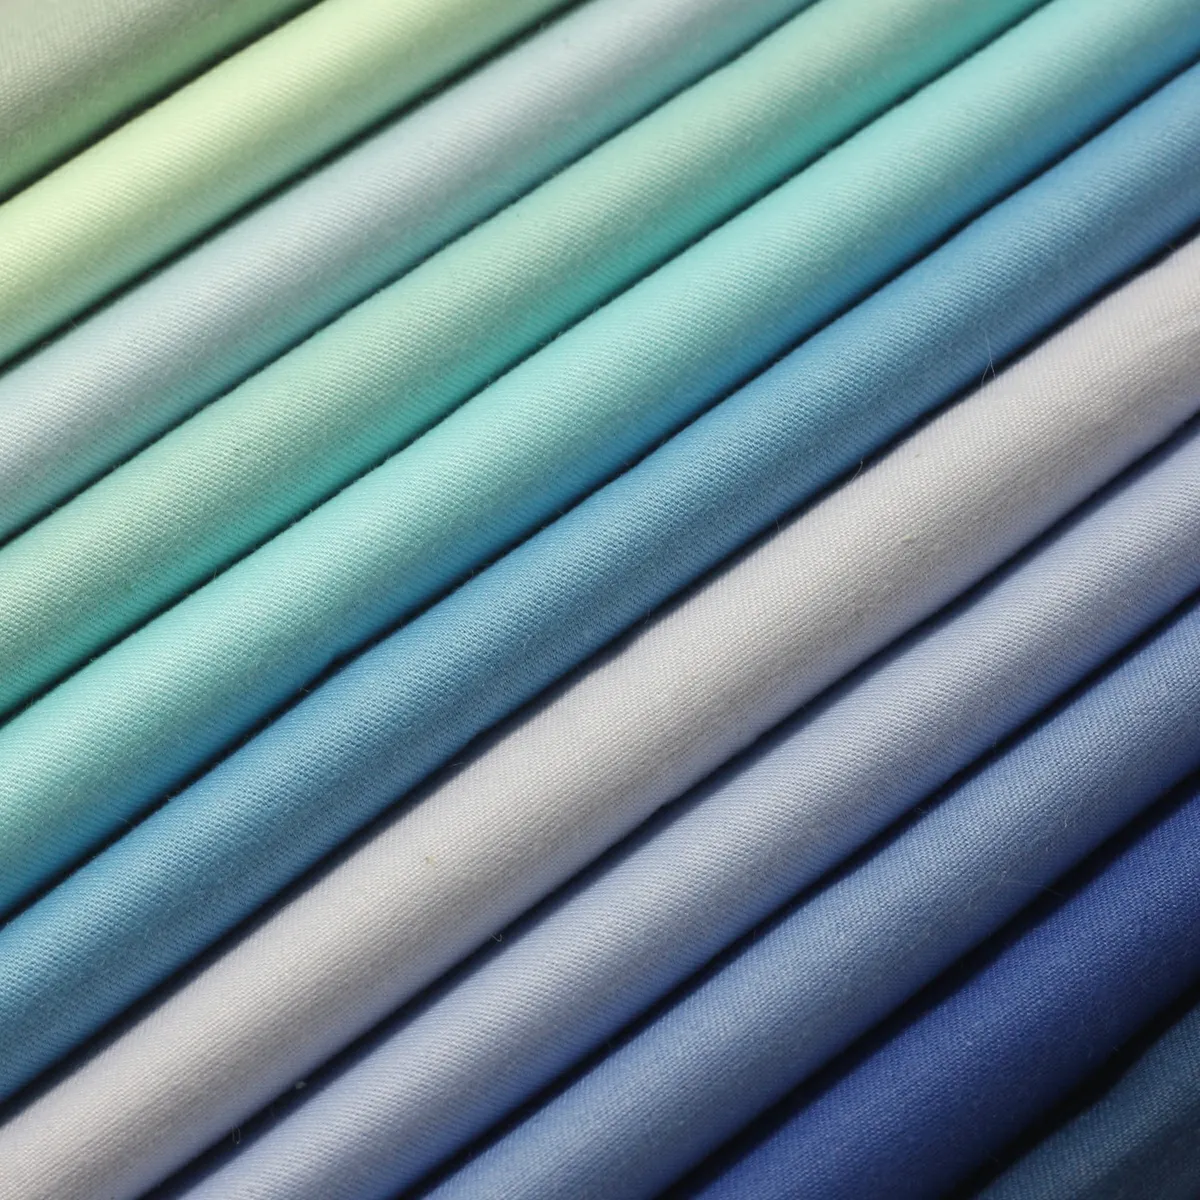 100% algodón blanco percal de algodón T233 tela a prueba de textiles ropa de cama